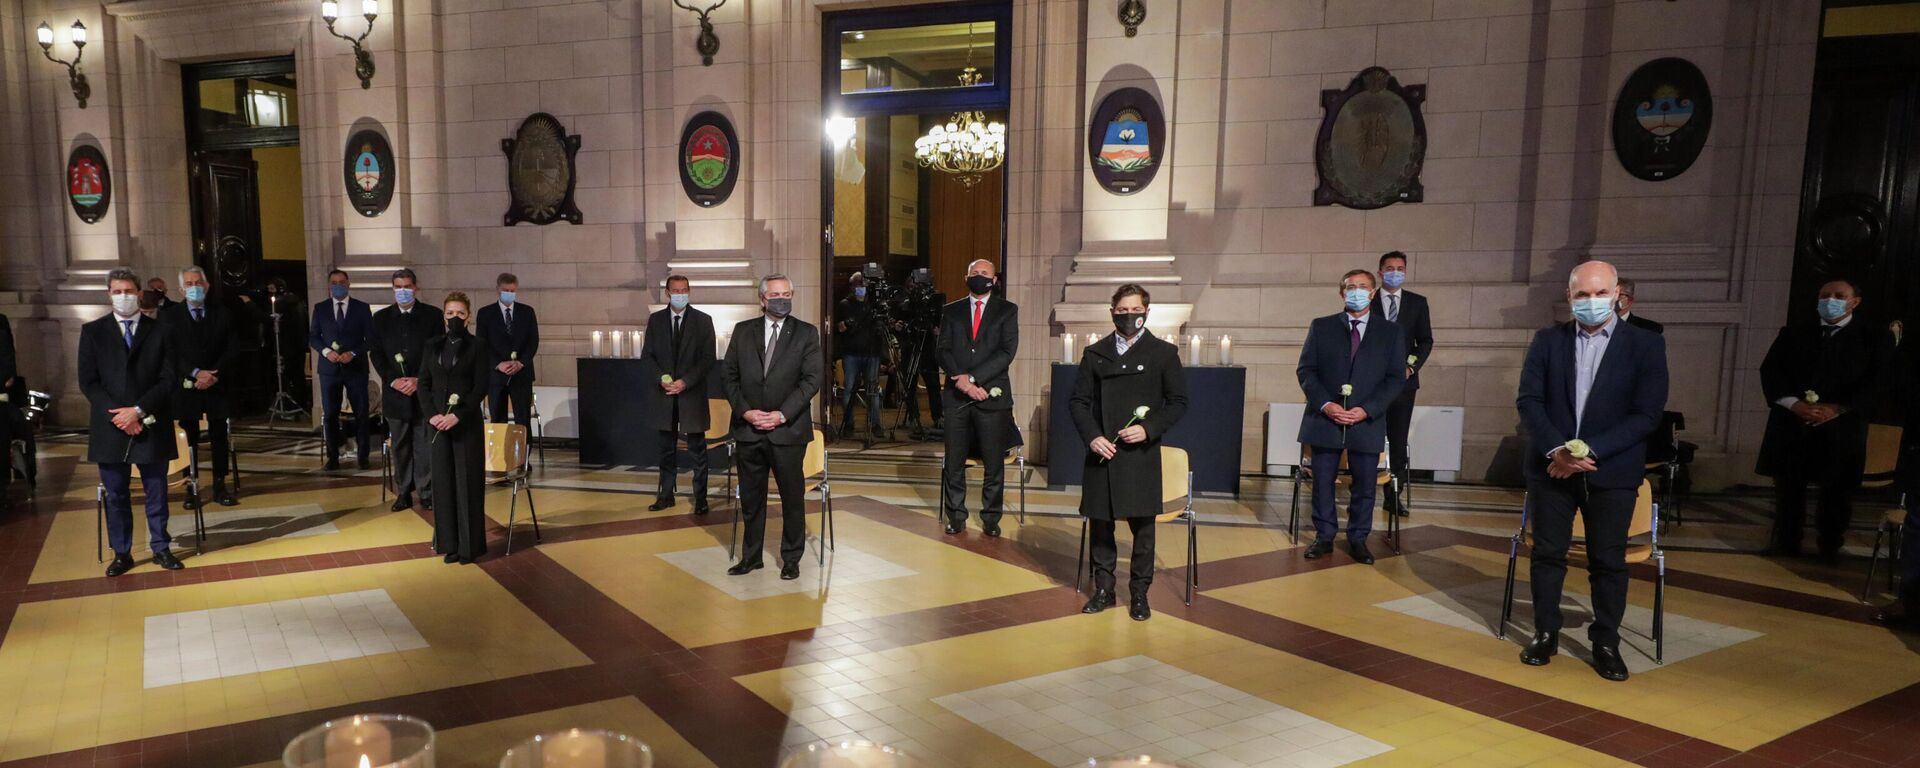 El presidente de Argentina, Alberto Fernández, junto a otras autoridades en un homenaje a los fallecidos por coronavirus - Sputnik Mundo, 1920, 27.06.2021